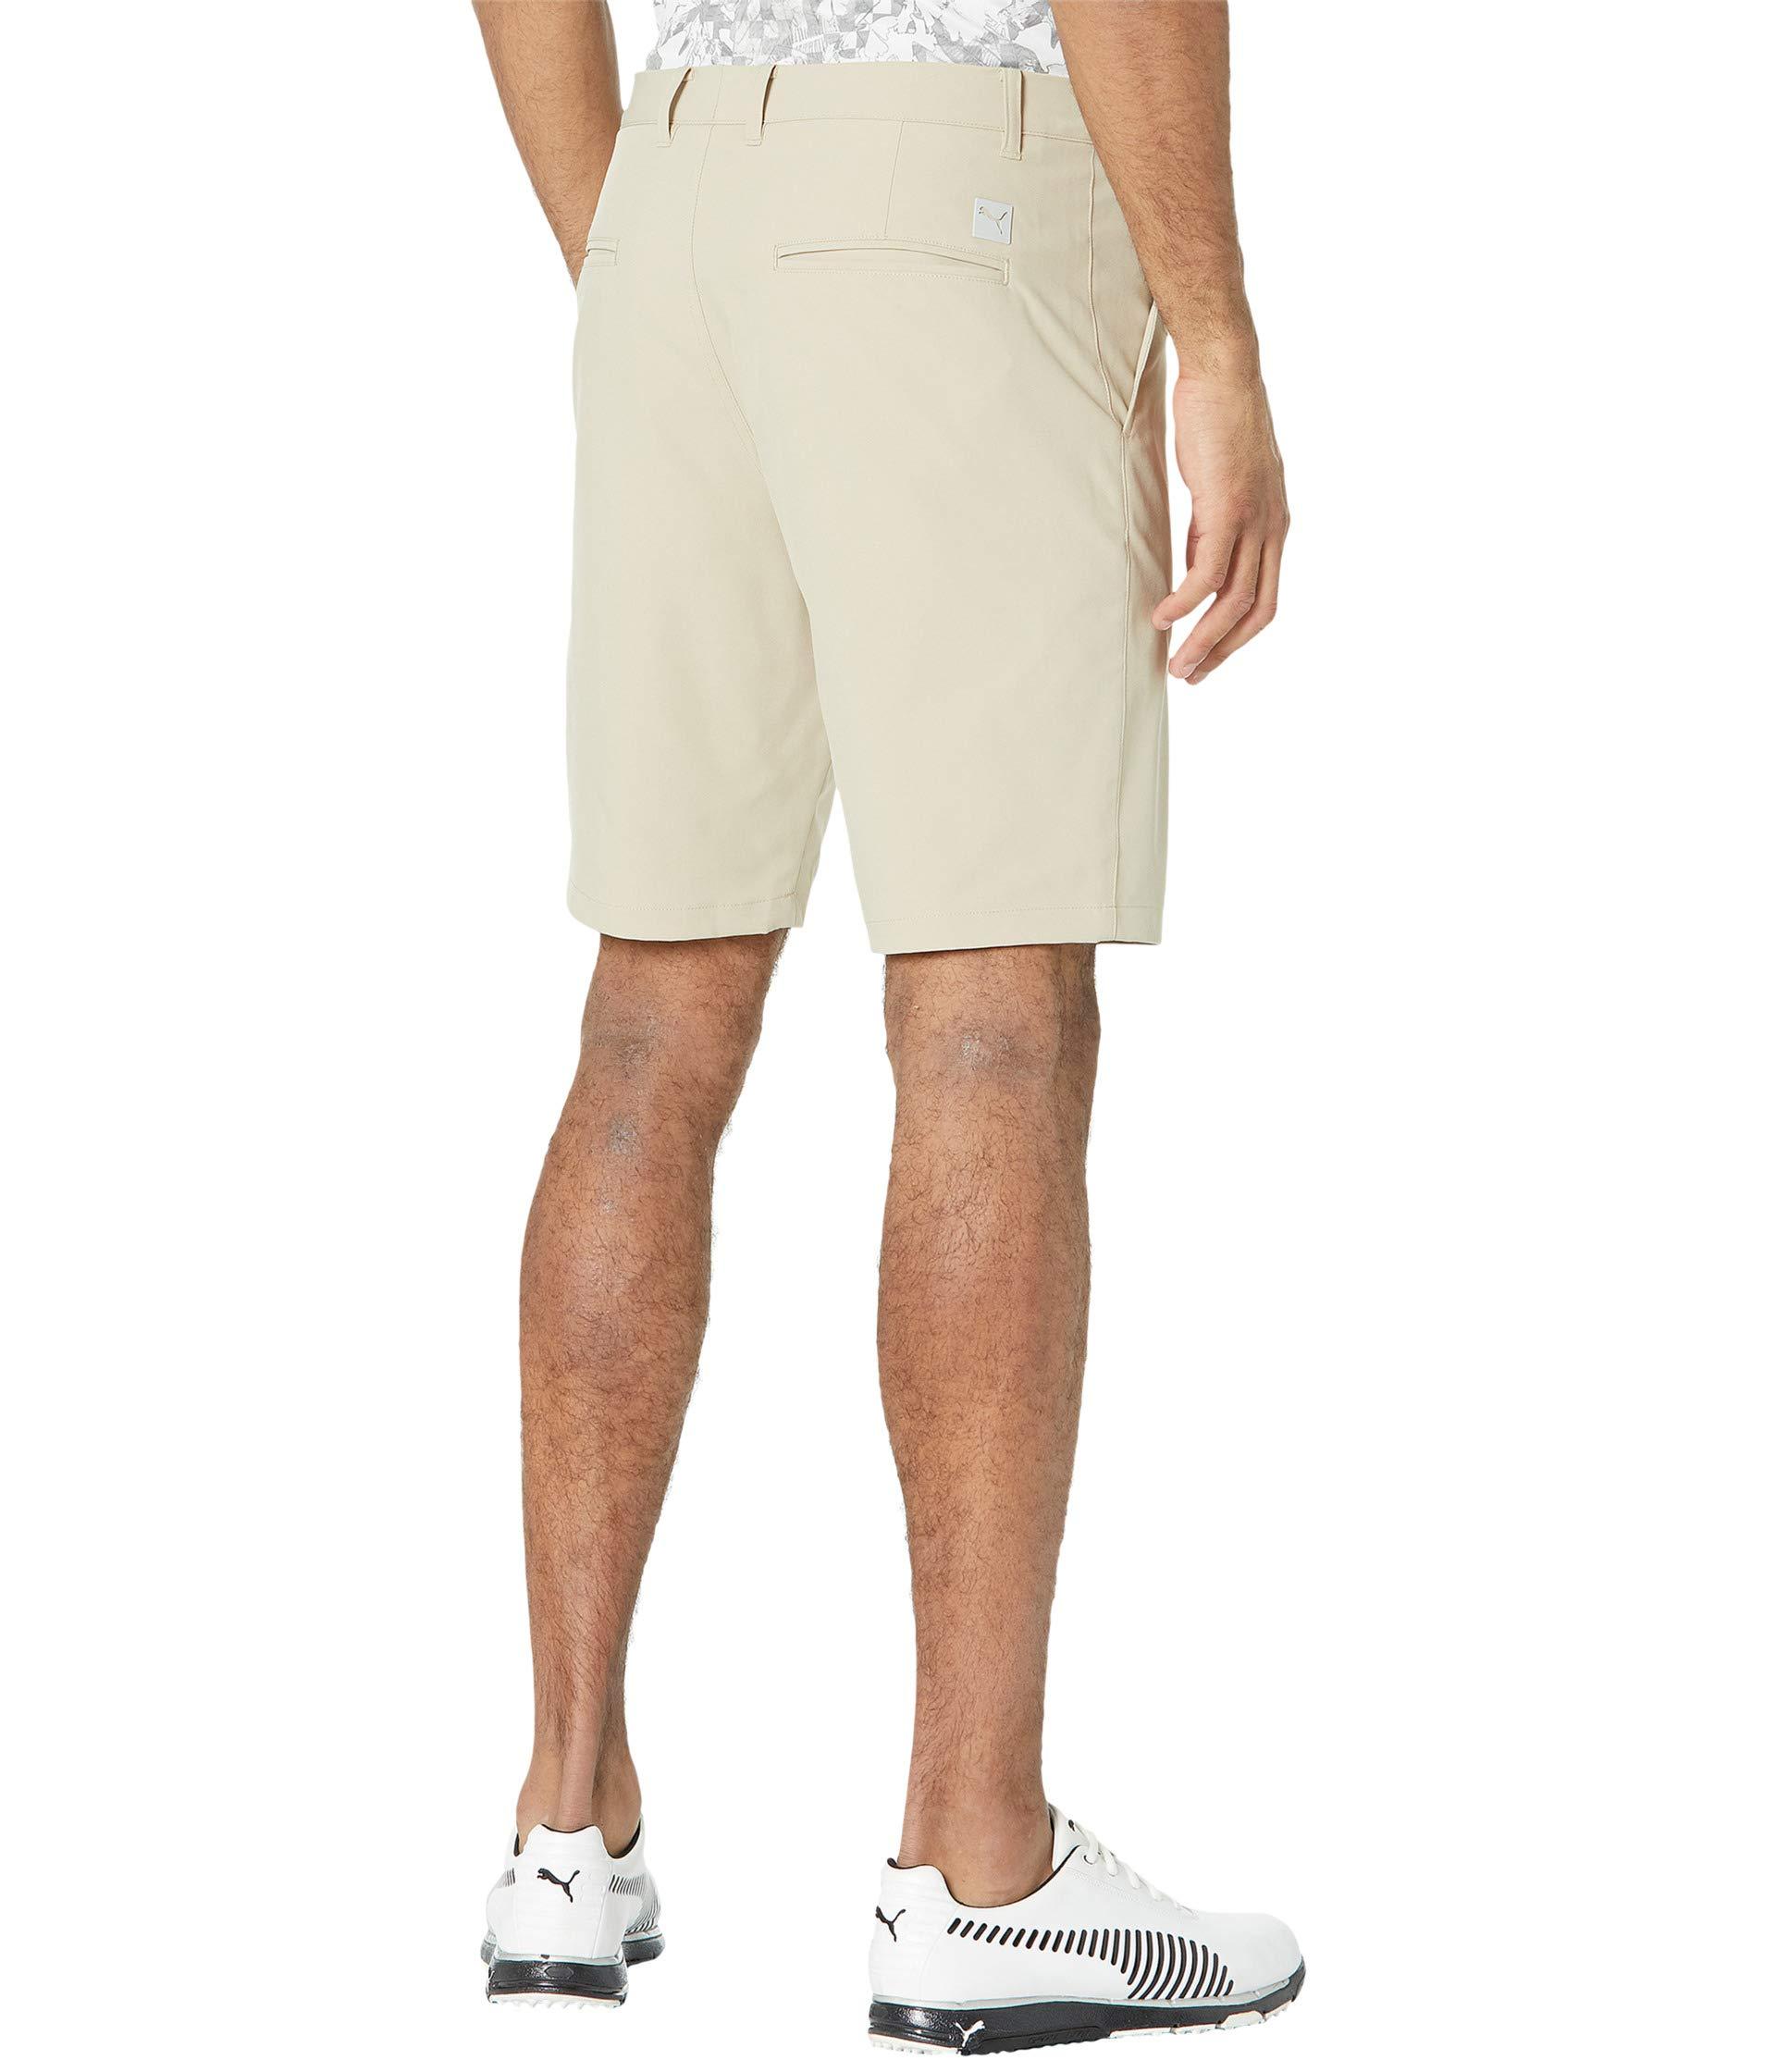 Puma Jackpot Utility Pants - Discount Golf Apparel/Discount Men's